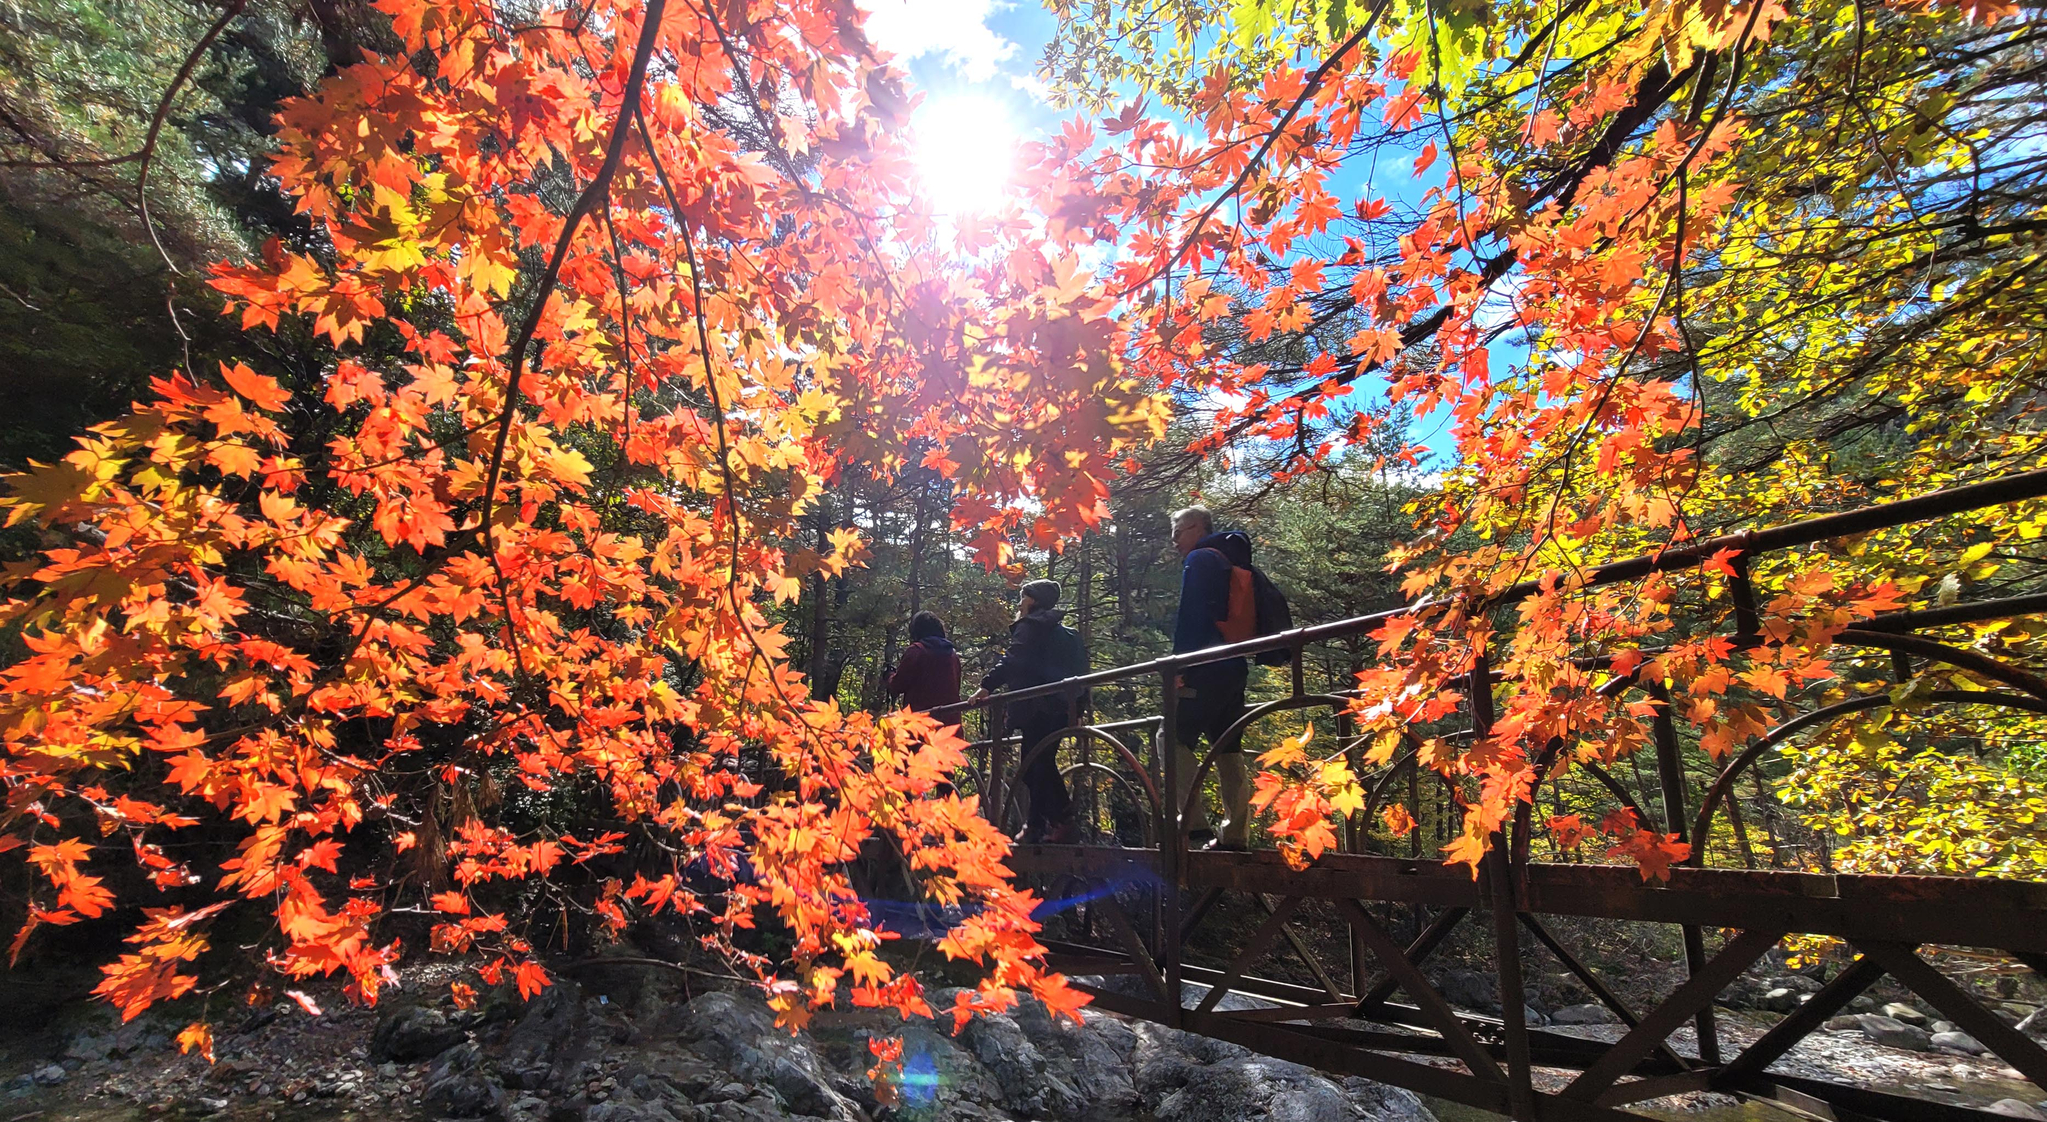  햇볕이 잘 드는 곳의 단풍나무의 빛깔이 곱다. 탐방객들이 산으로 오르고 있다. 김상선 기자